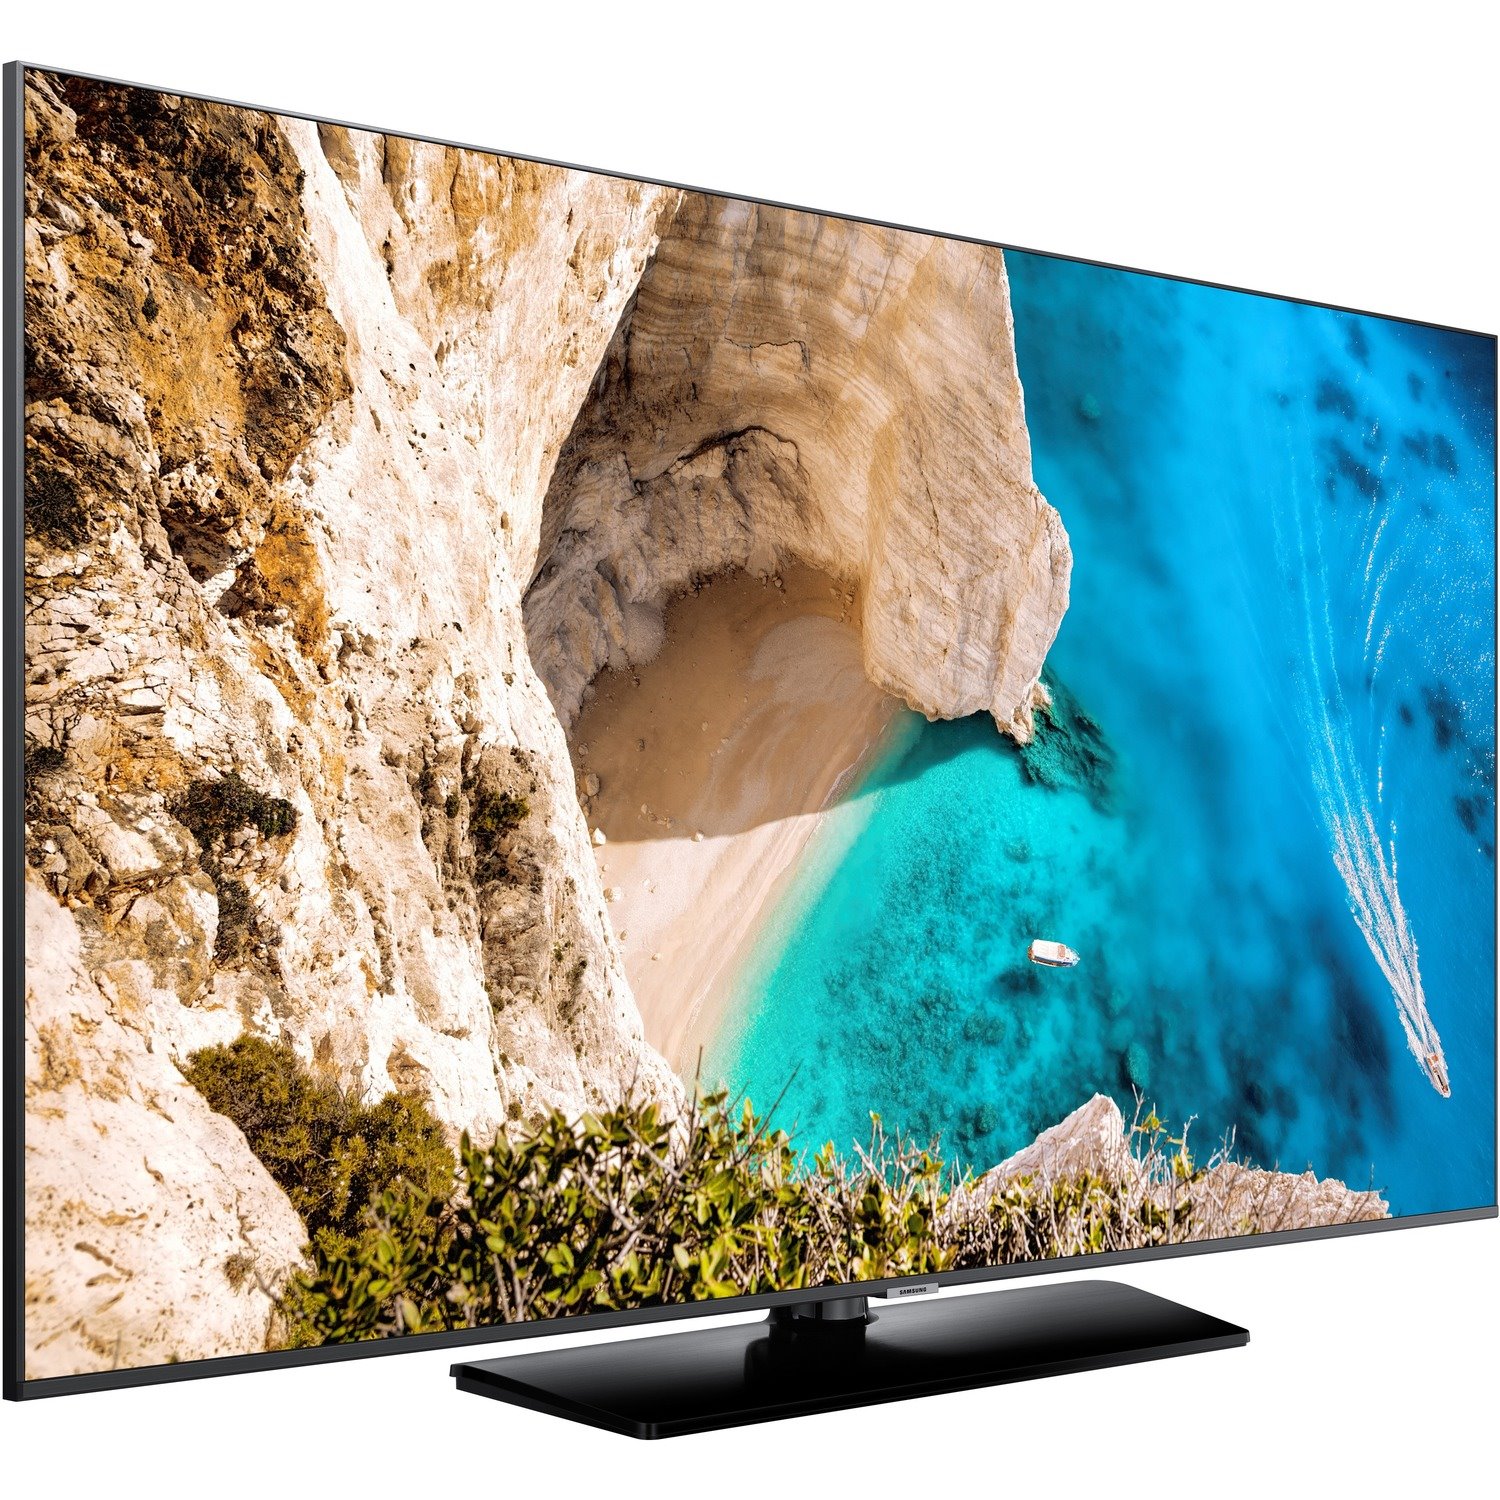 Samsung Hospitality NT670U HG55NT670UF 55" LED-LCD TV - 4K UHDTV - Black